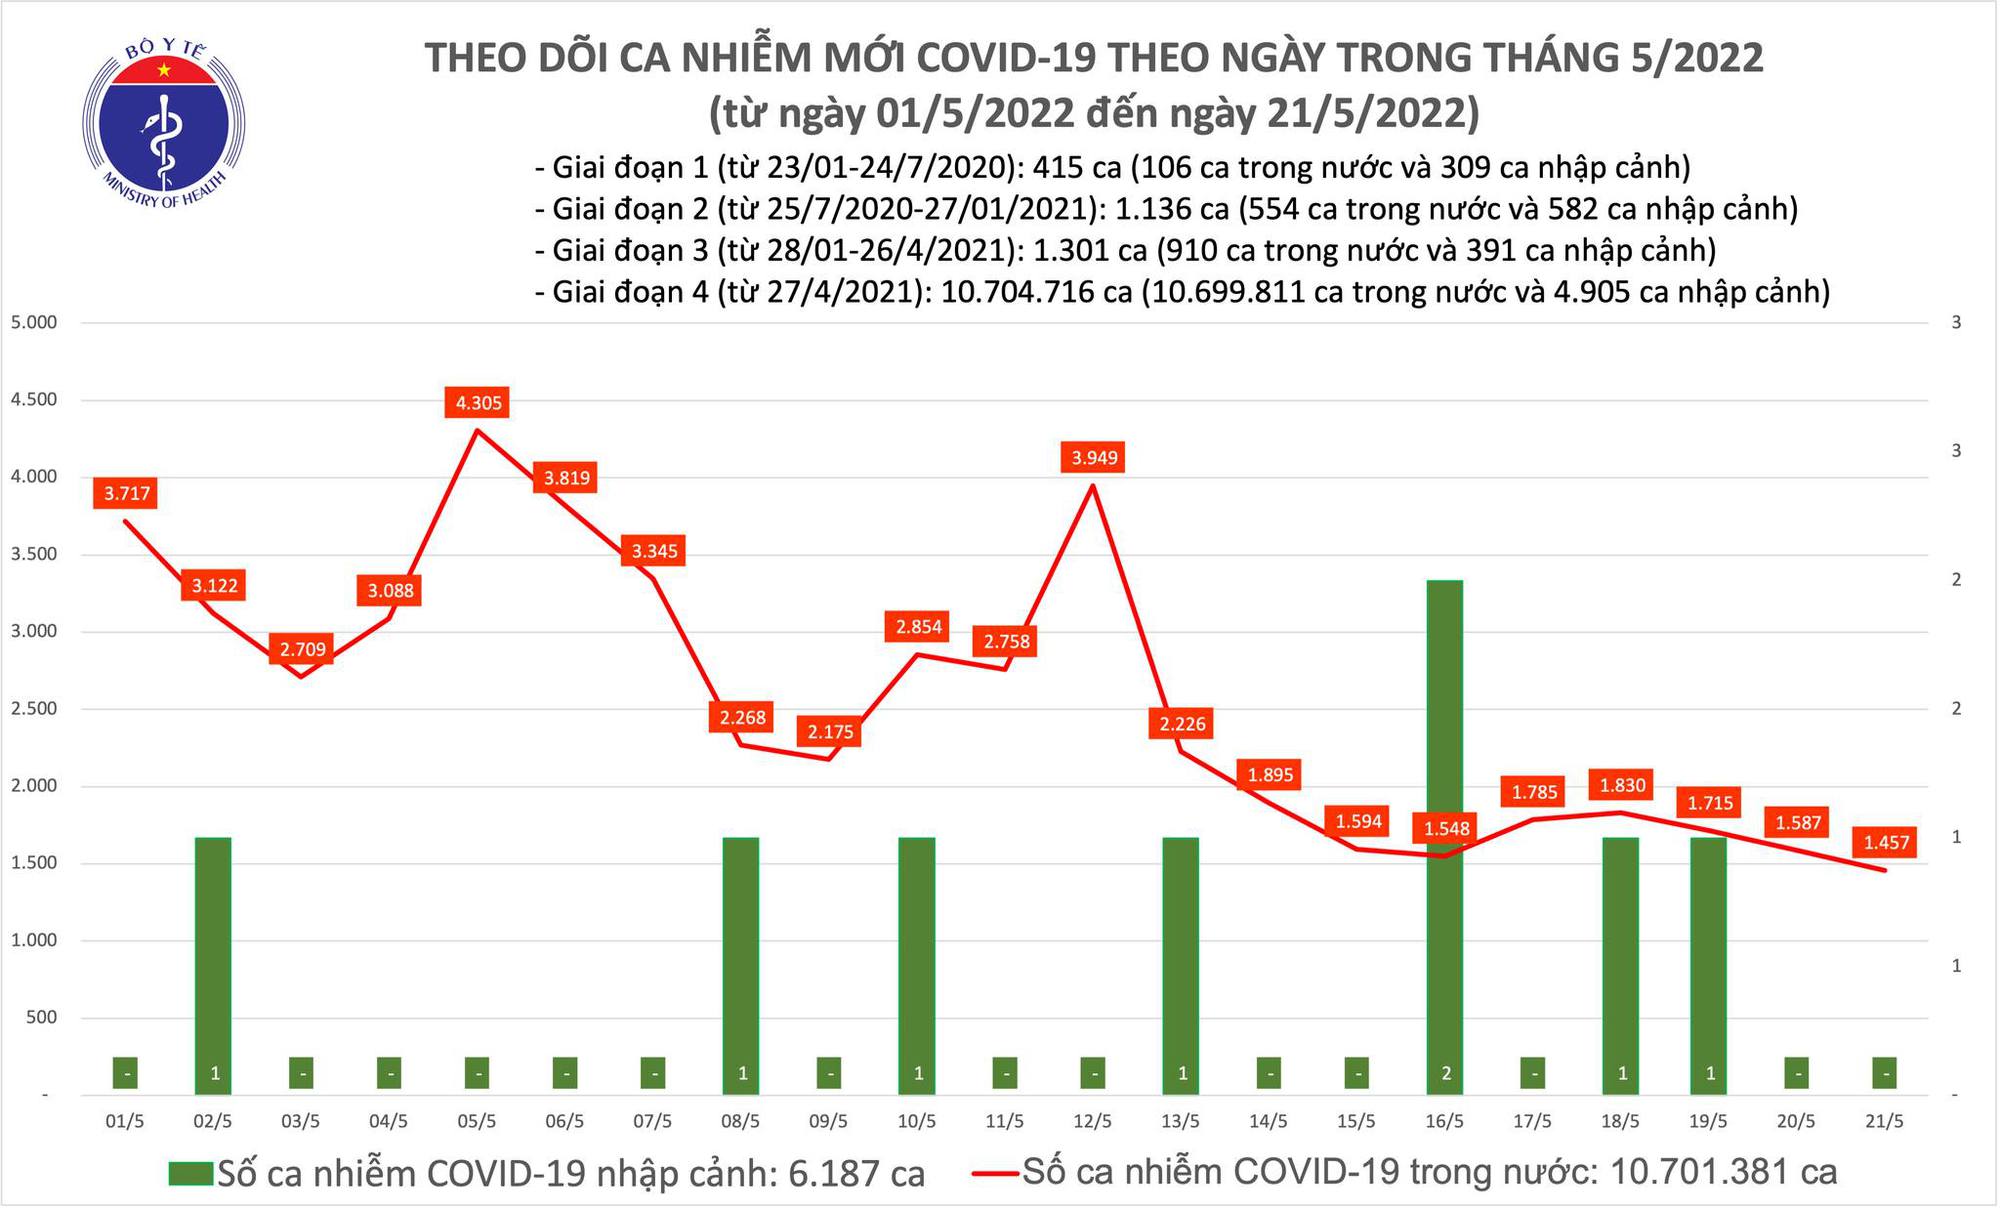 Ngày 21/5: Hơn 1.400 ca Covid-19 mới, 0 ca tử vong - Ảnh 1.